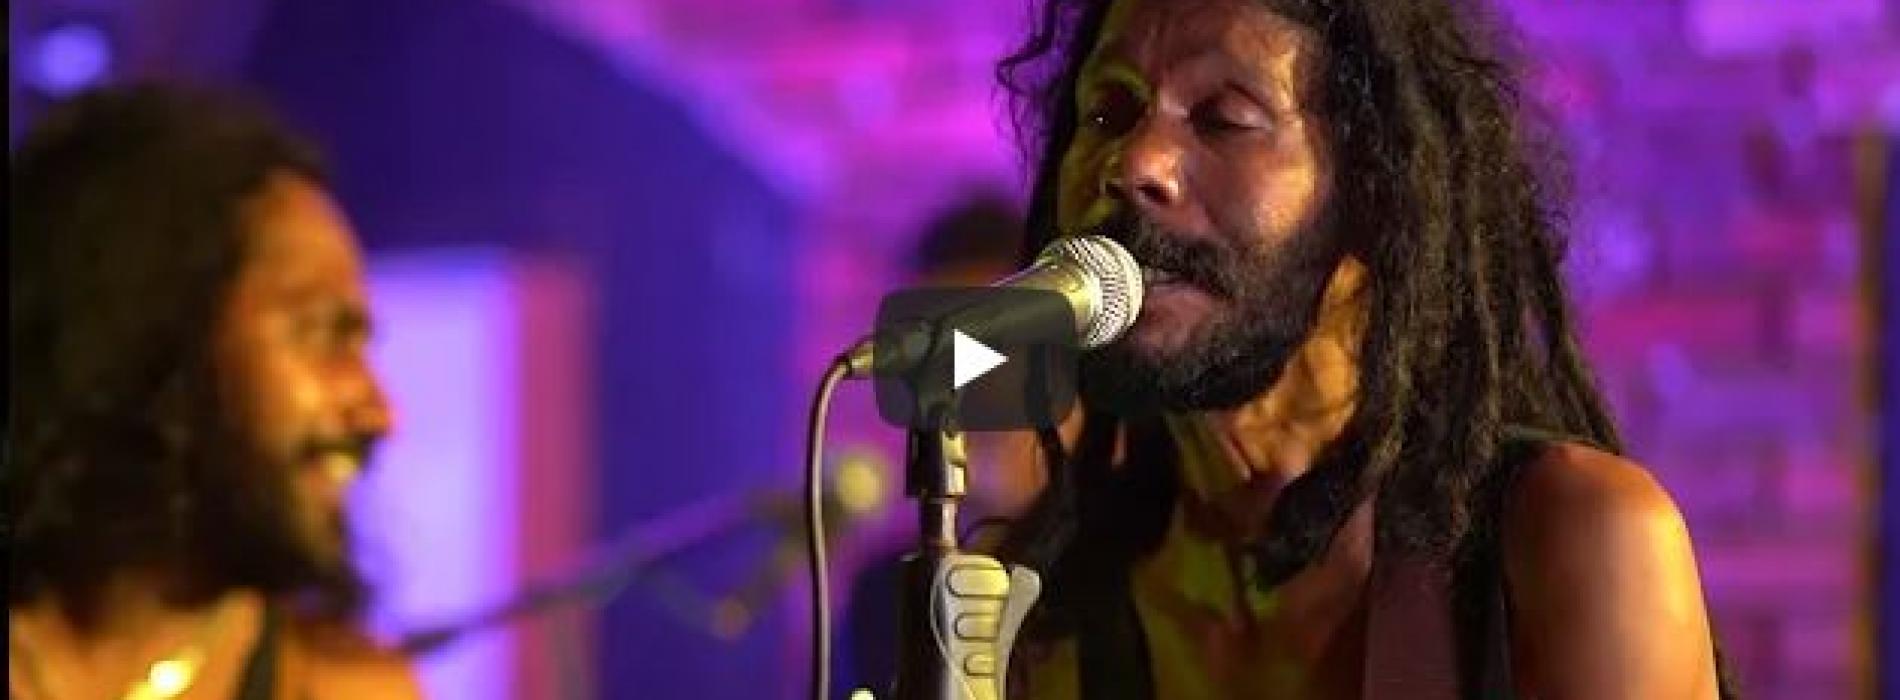 New Music : padamata bipalla (පදමට බීපල්ලා )sri lankan reggae song by Shane Vanderwall